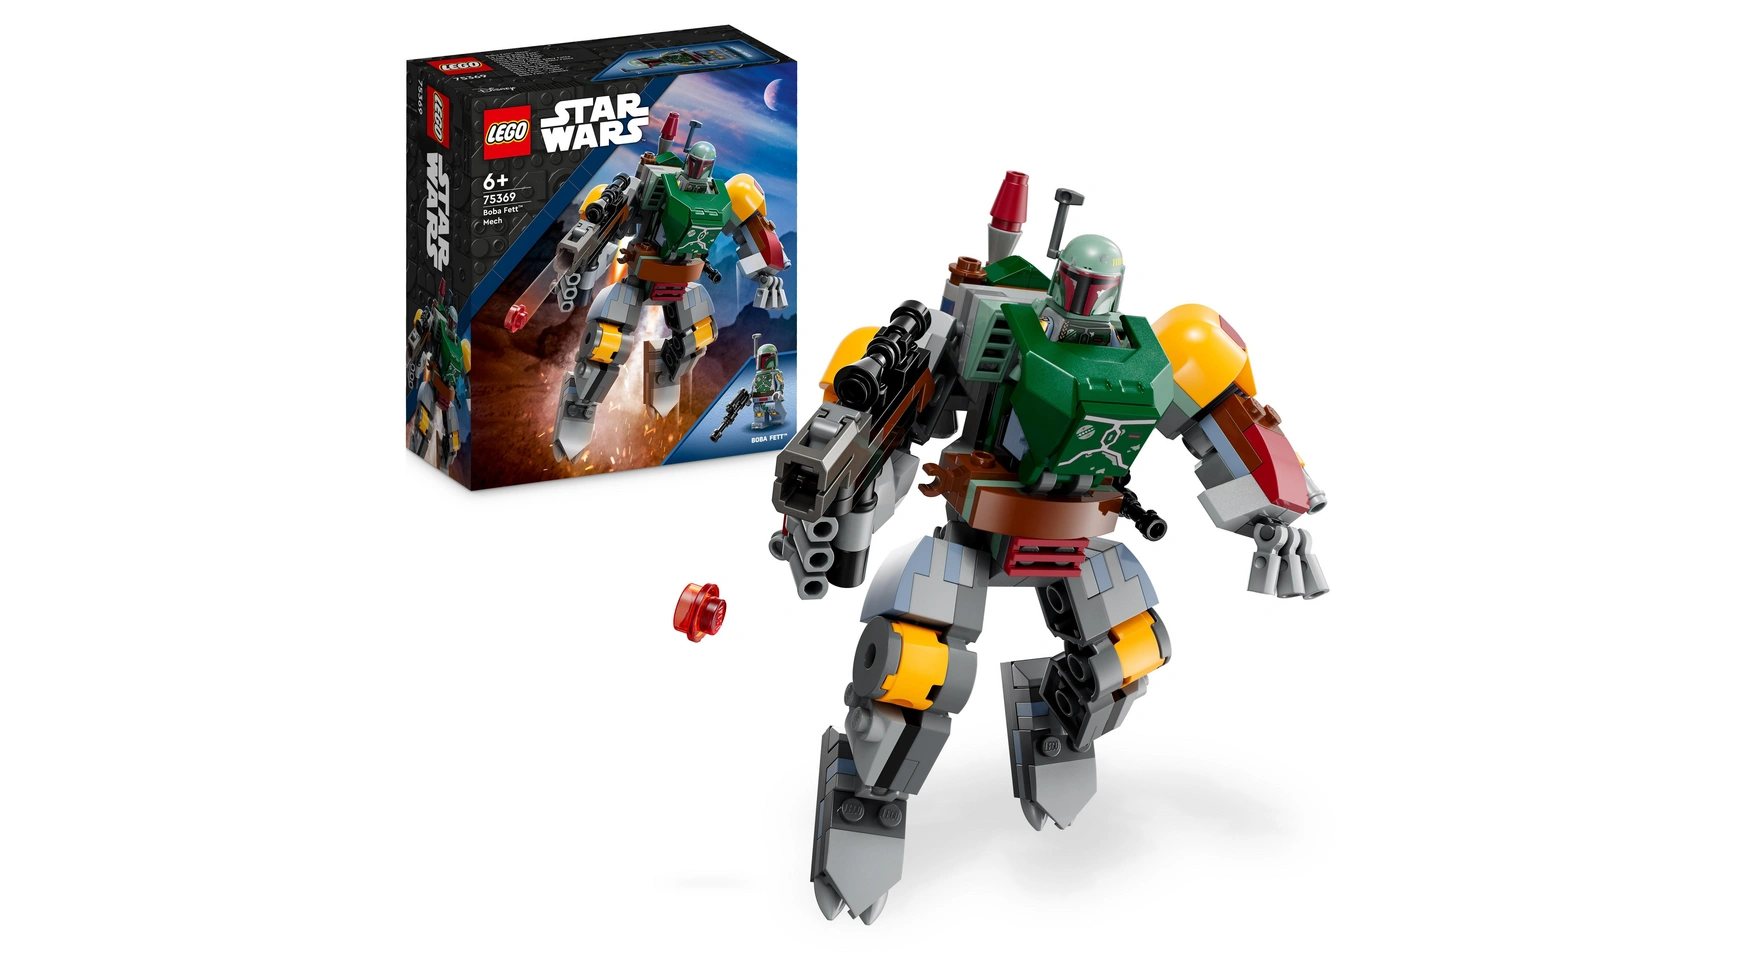 конструктор lego star wars звездолет бобы фетта 75312 Lego Star Wars Набор роботов Бобы Фетта, сборная фигурка с бластером